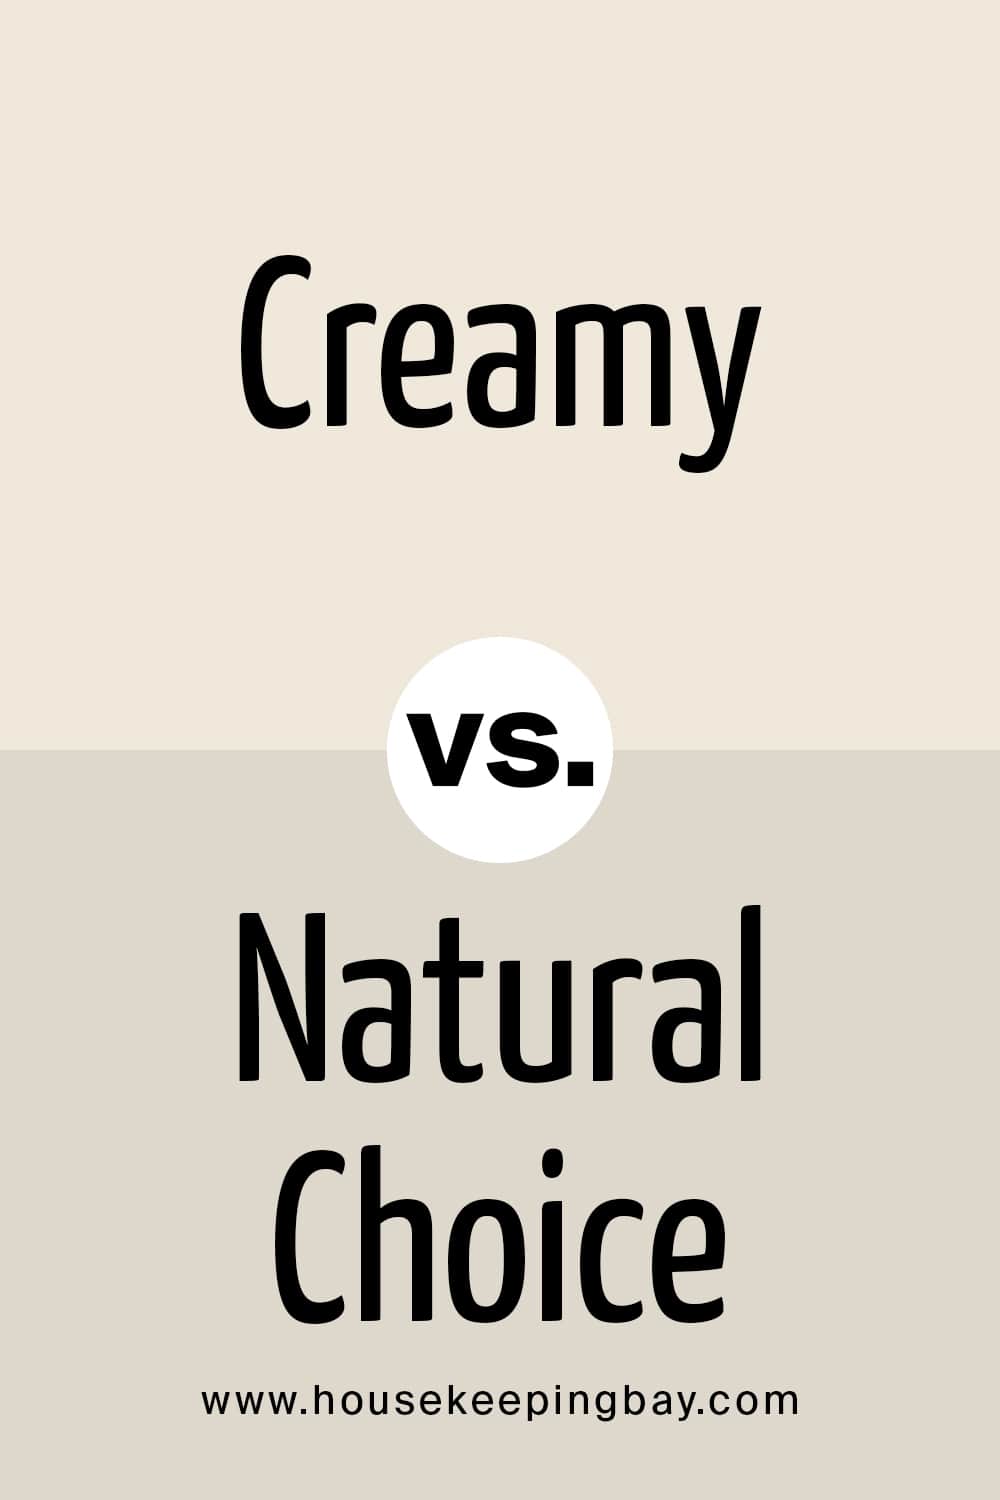 Creamy vs Natural Choice